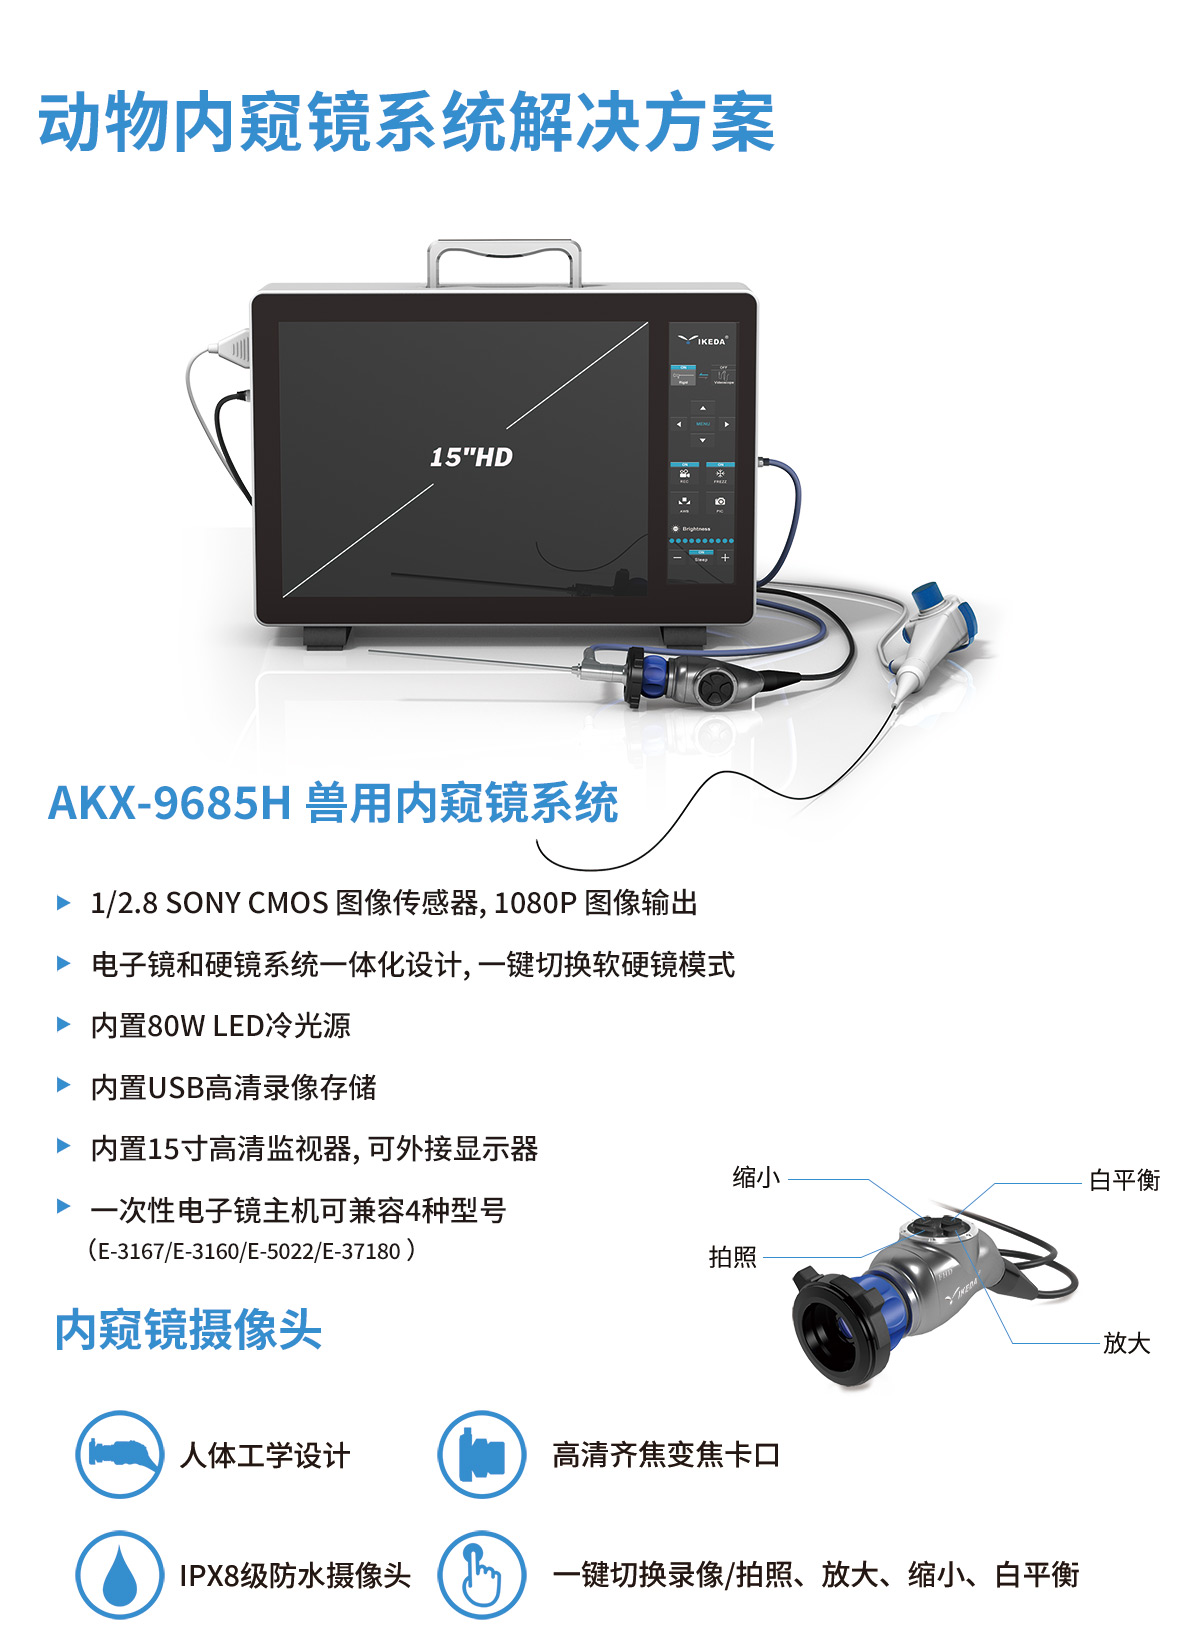 AKX-9685H 软硬镜一体式内窥镜系统